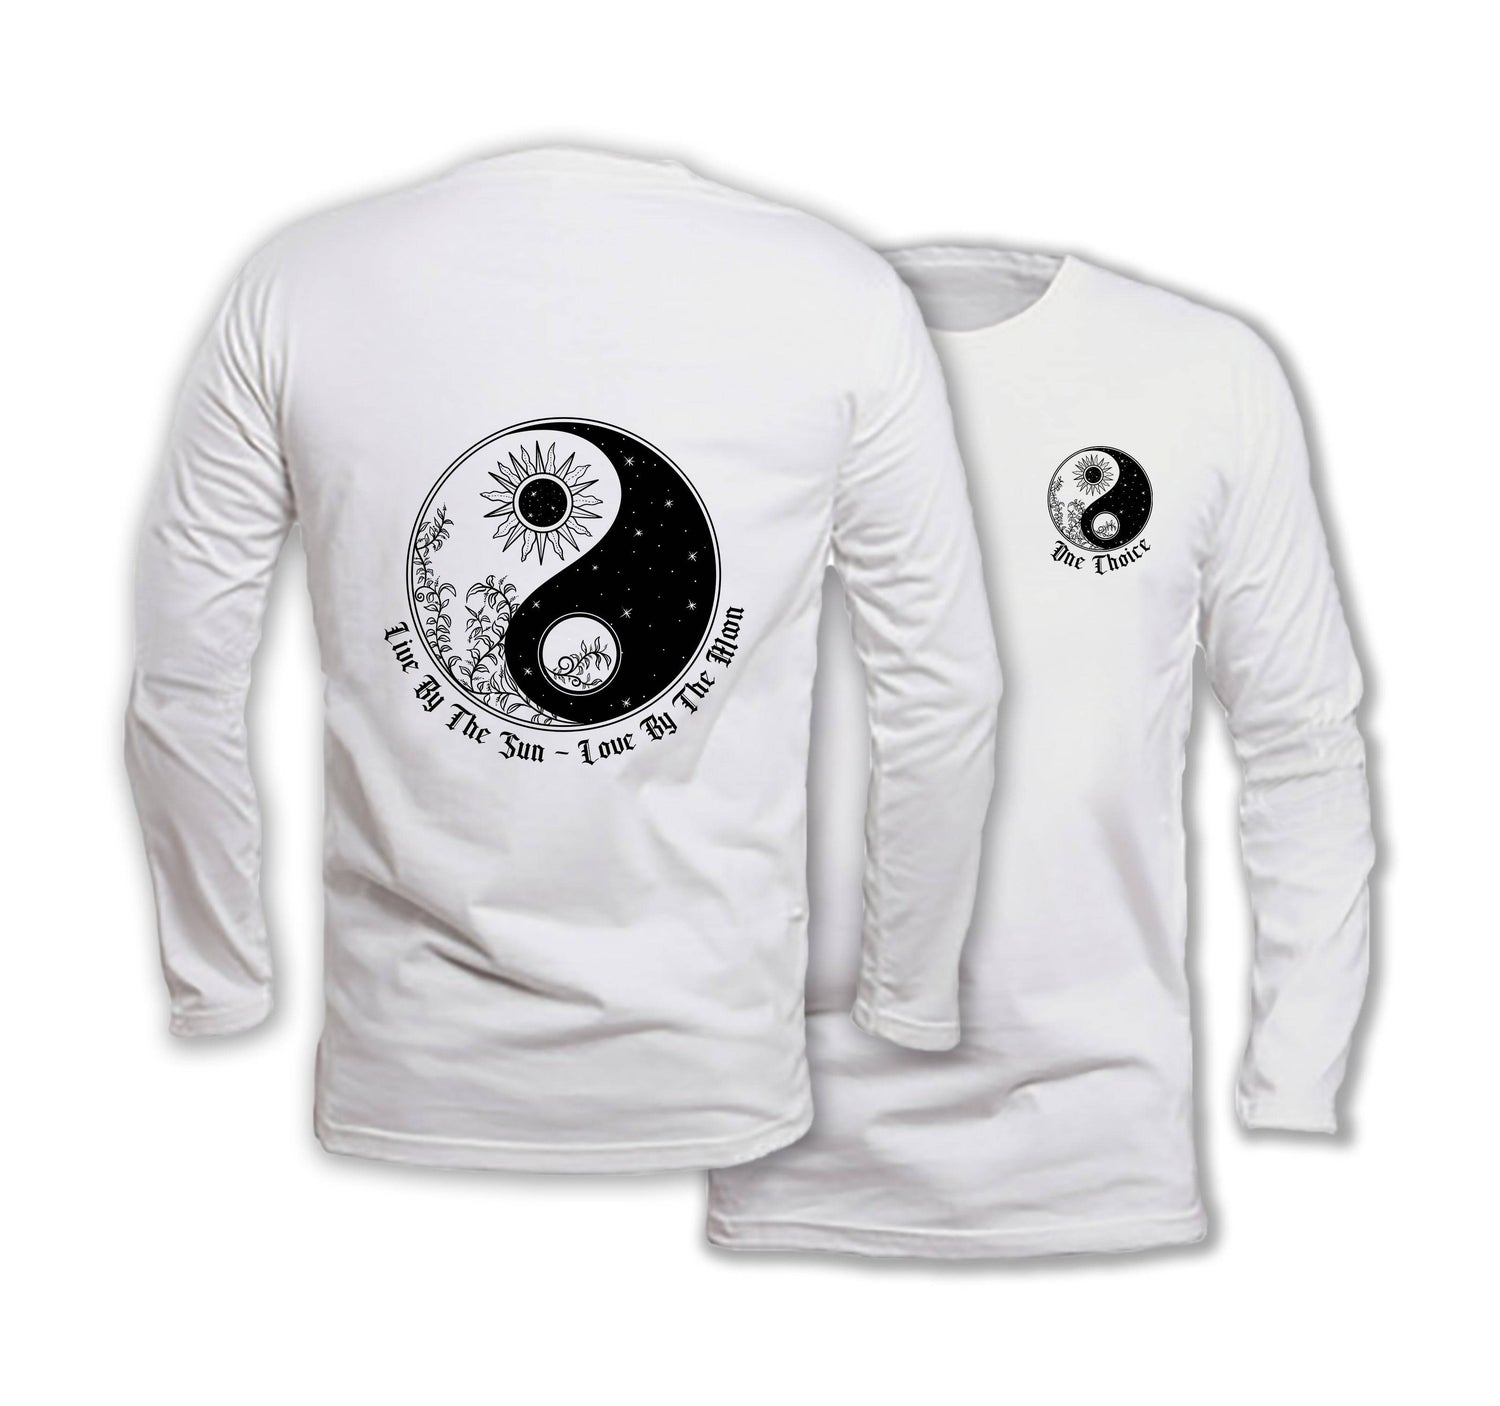 Yin Yang - Long Sleeve Organic Cotton T-Shirt - One Choice Apparel